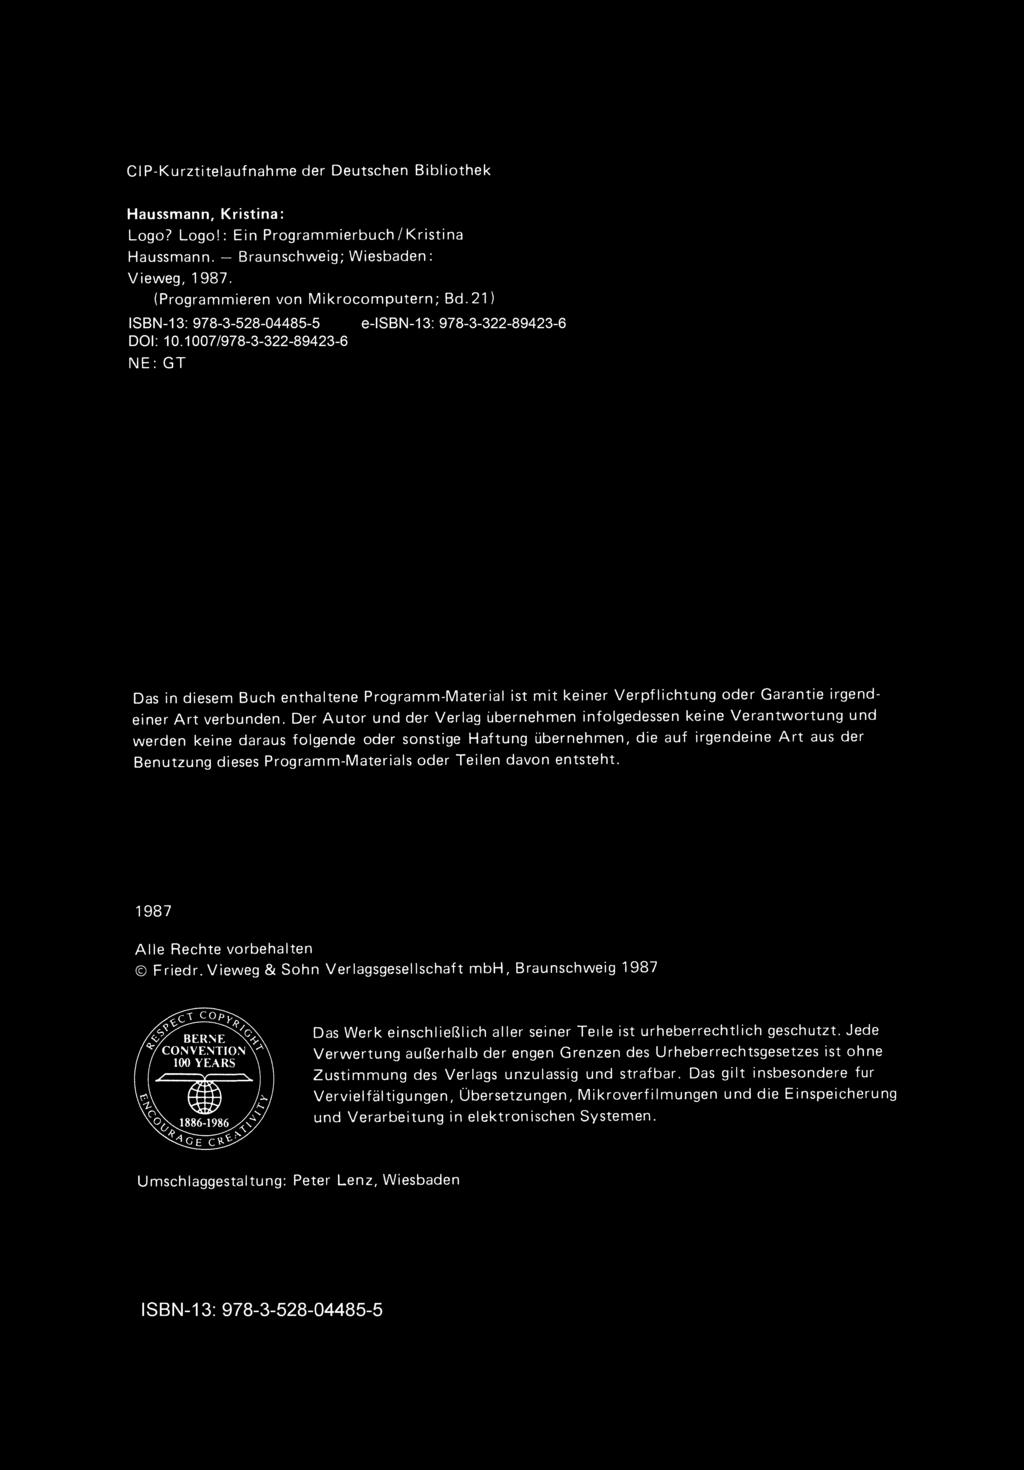 CIP-Kurztitelaufnahme der Deutschen Bibliothek Haussmann, Kristina: Logo? Logo!: Ein Programmierbuch / Kristina Haussmann, - Braunschweig; Wiesbaden: Vieweg, 1987, (Programmieren von Mikrocomputern; Bd.